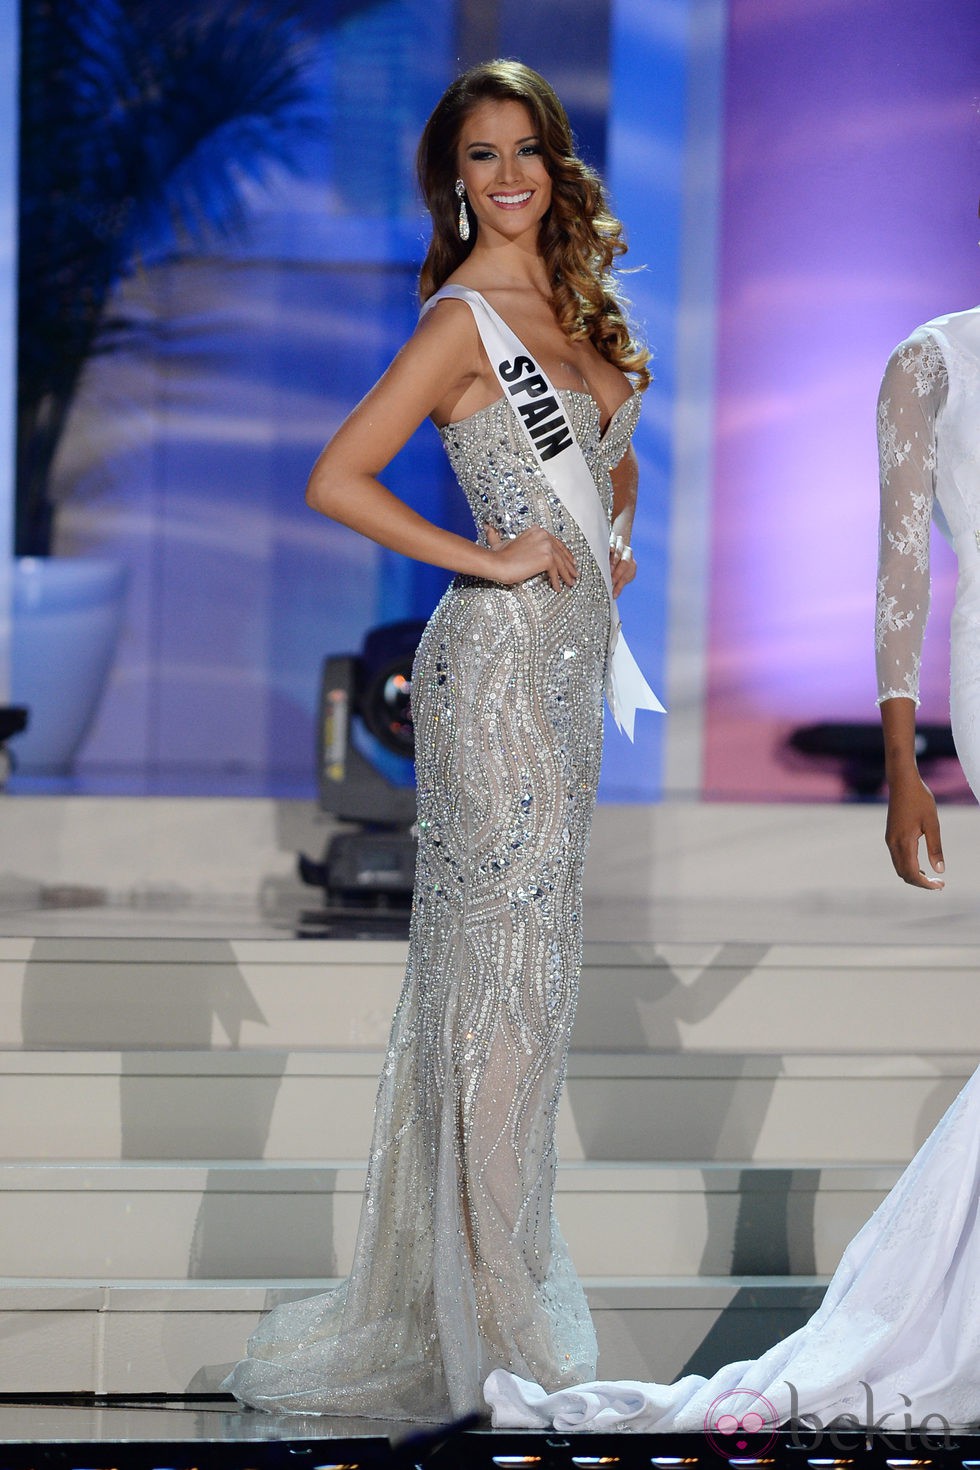 Desiré Cordero desfilando en traje de noche en la gala previa a la final de Miss Universo 2015